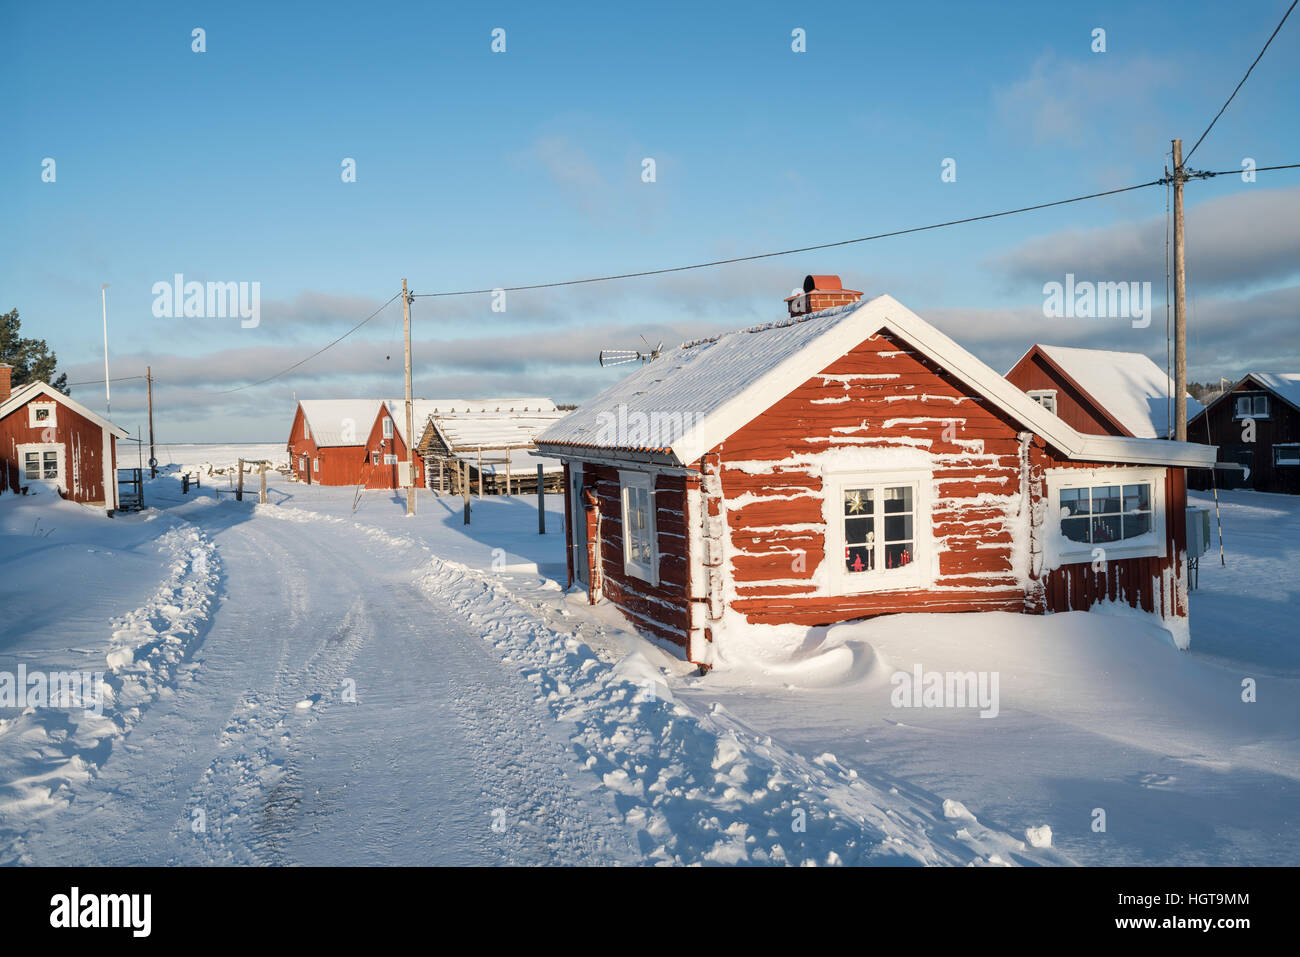 Des petits cottages dans la neige à l'hiver. Fagelsundet village de pêcheurs sur la côte de Roslagen, Uppland, Suède, Scandinavie Banque D'Images